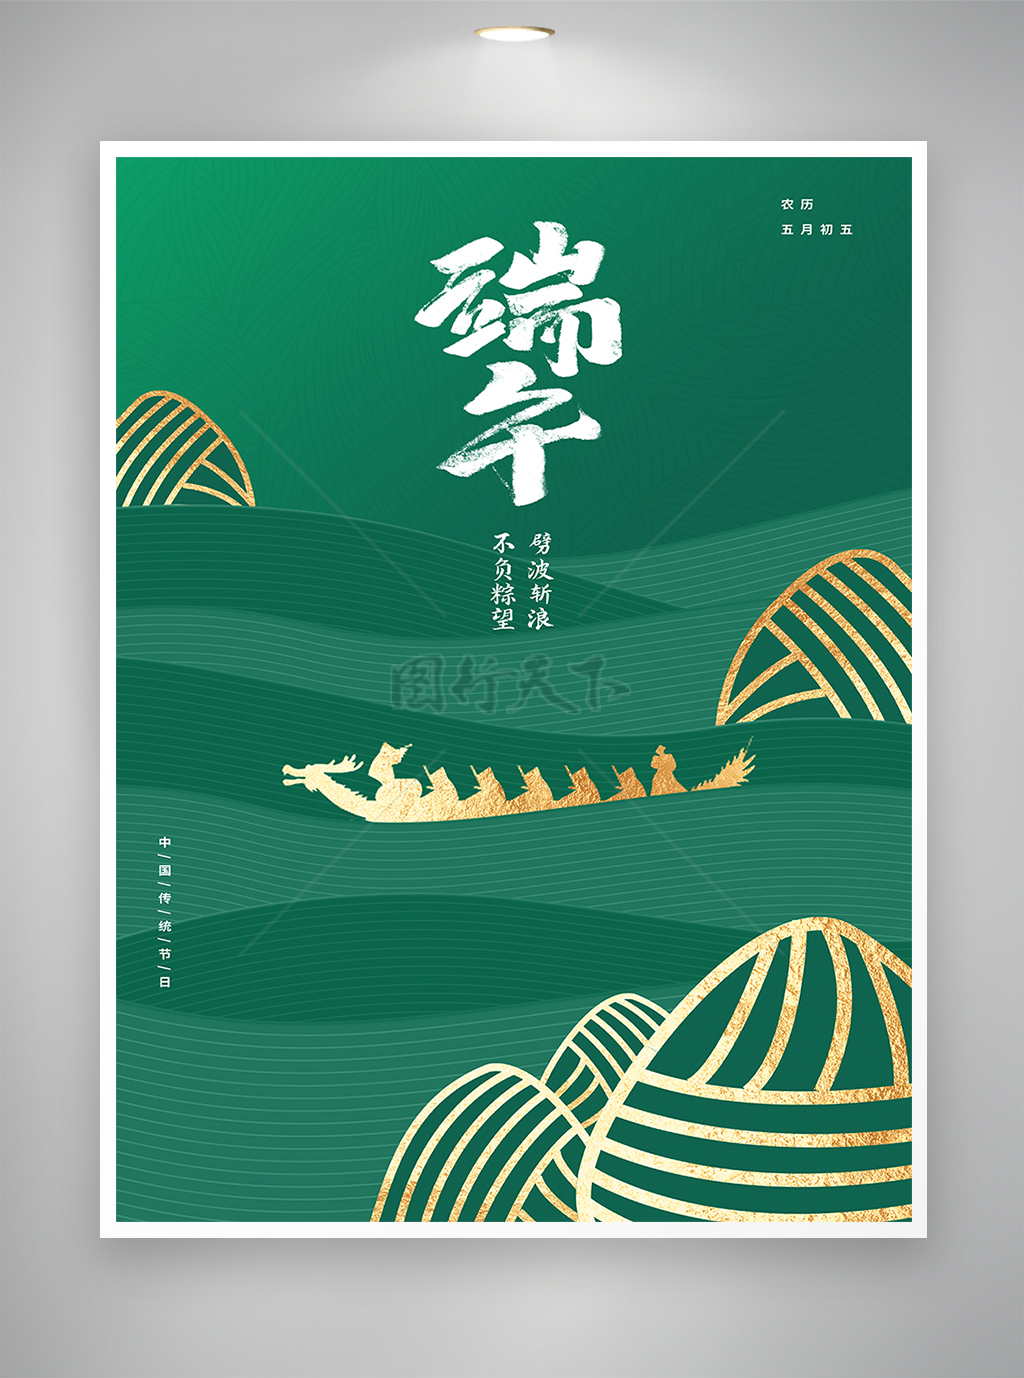 中国传统节日端午节节日宣传海报